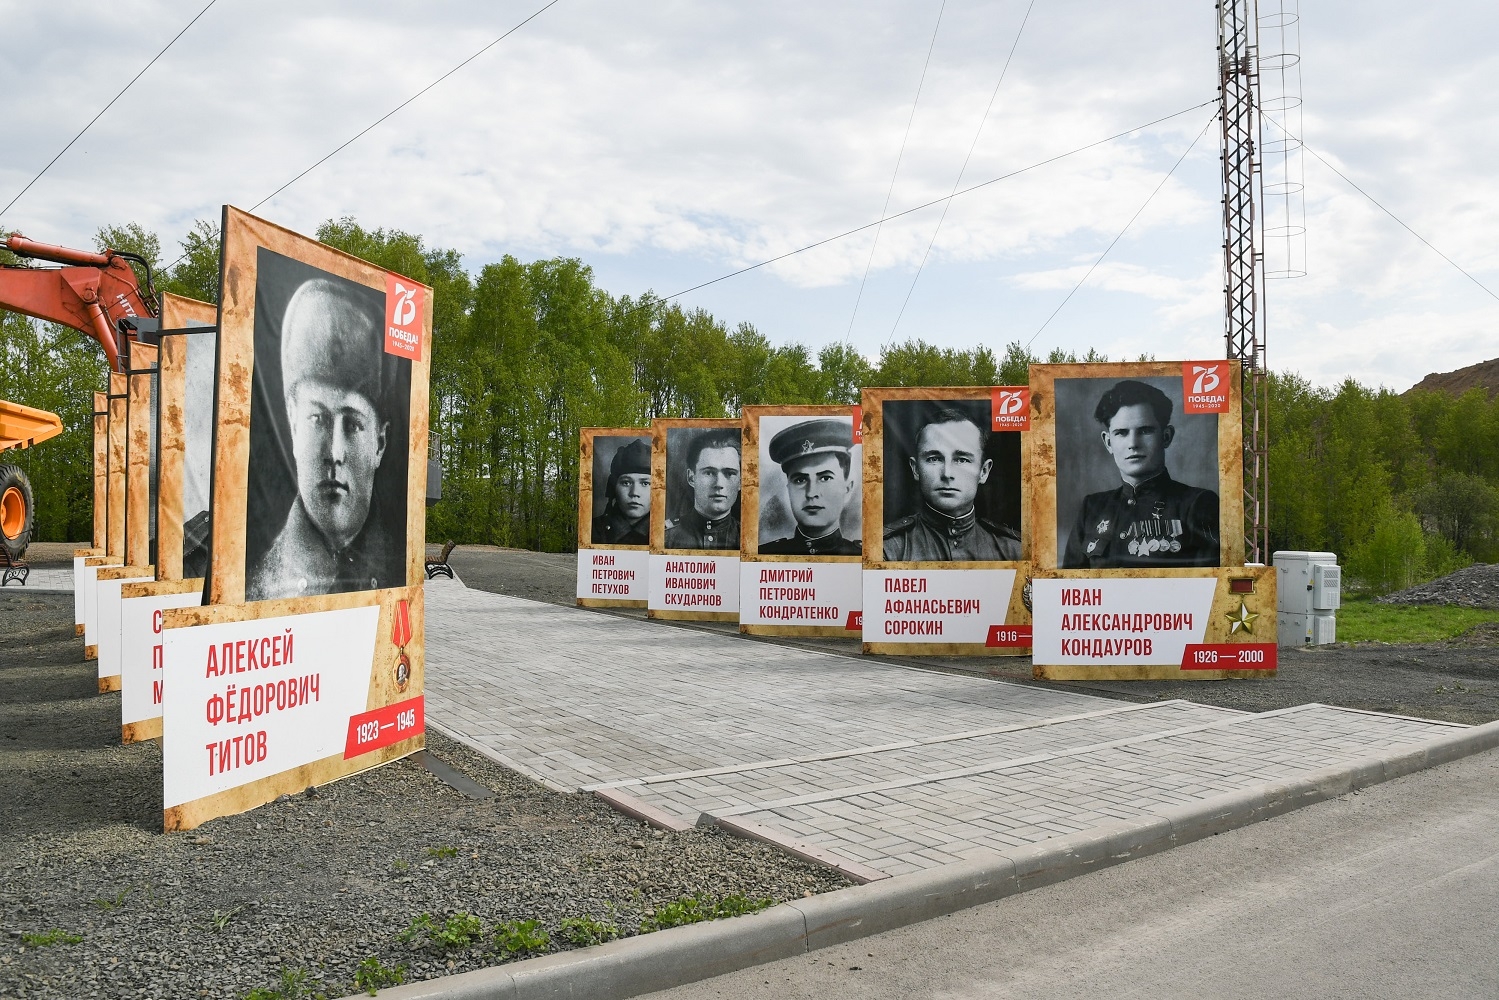 Портреты фронтовиков установили на 130-тонных самосвалах на разрезе "Стройсервиса" в Кузбассе в честь дня Победы